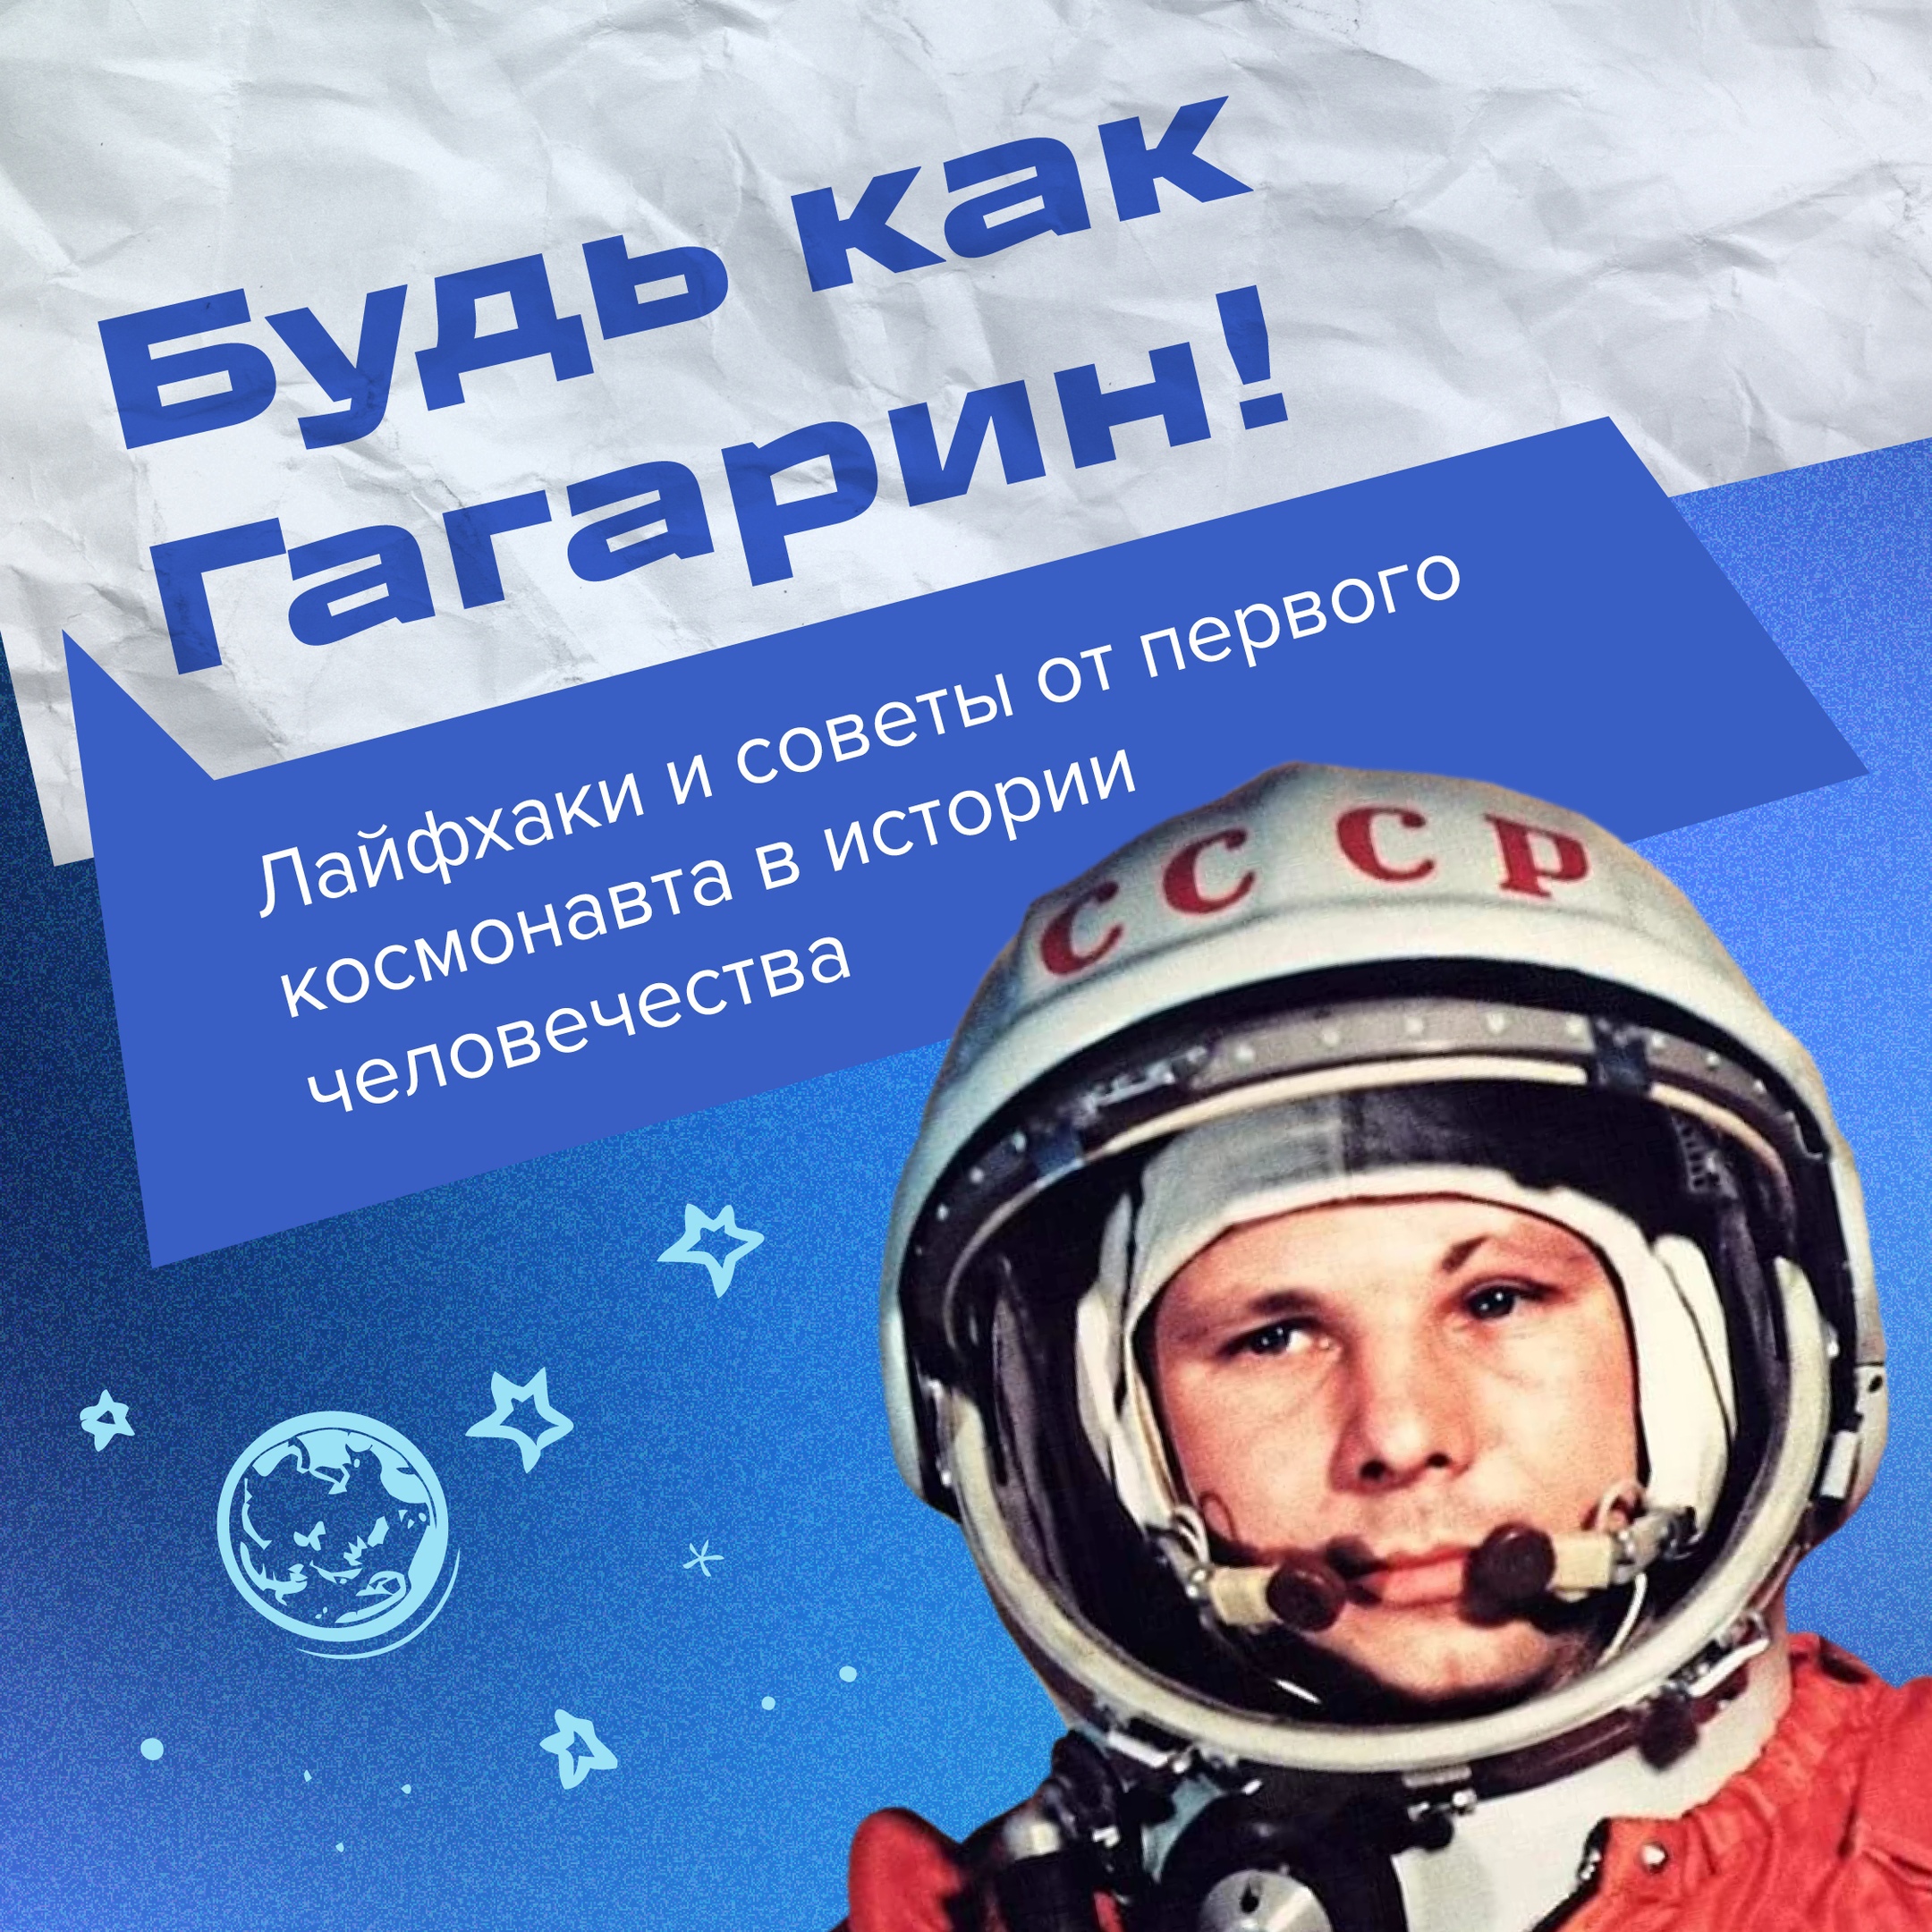 Ребята, поздравляем с Днём космонавтики!.